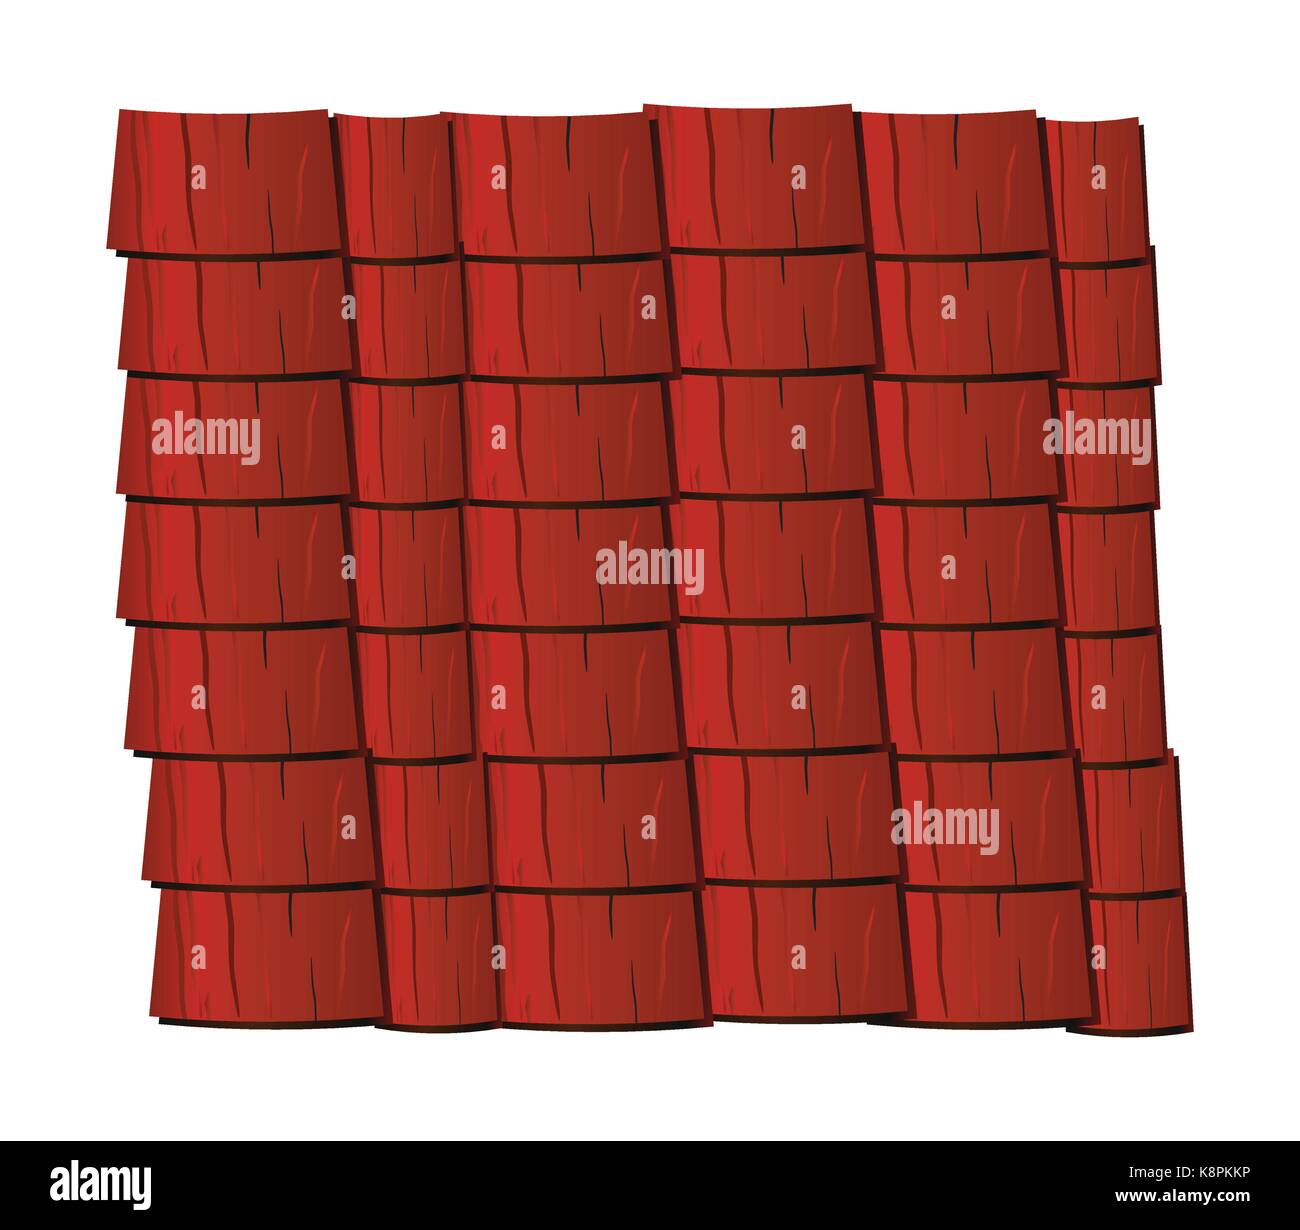 Texture vecteur illustration d'un toit de tuiles rouges, de l'ardoise. Illustration de Vecteur